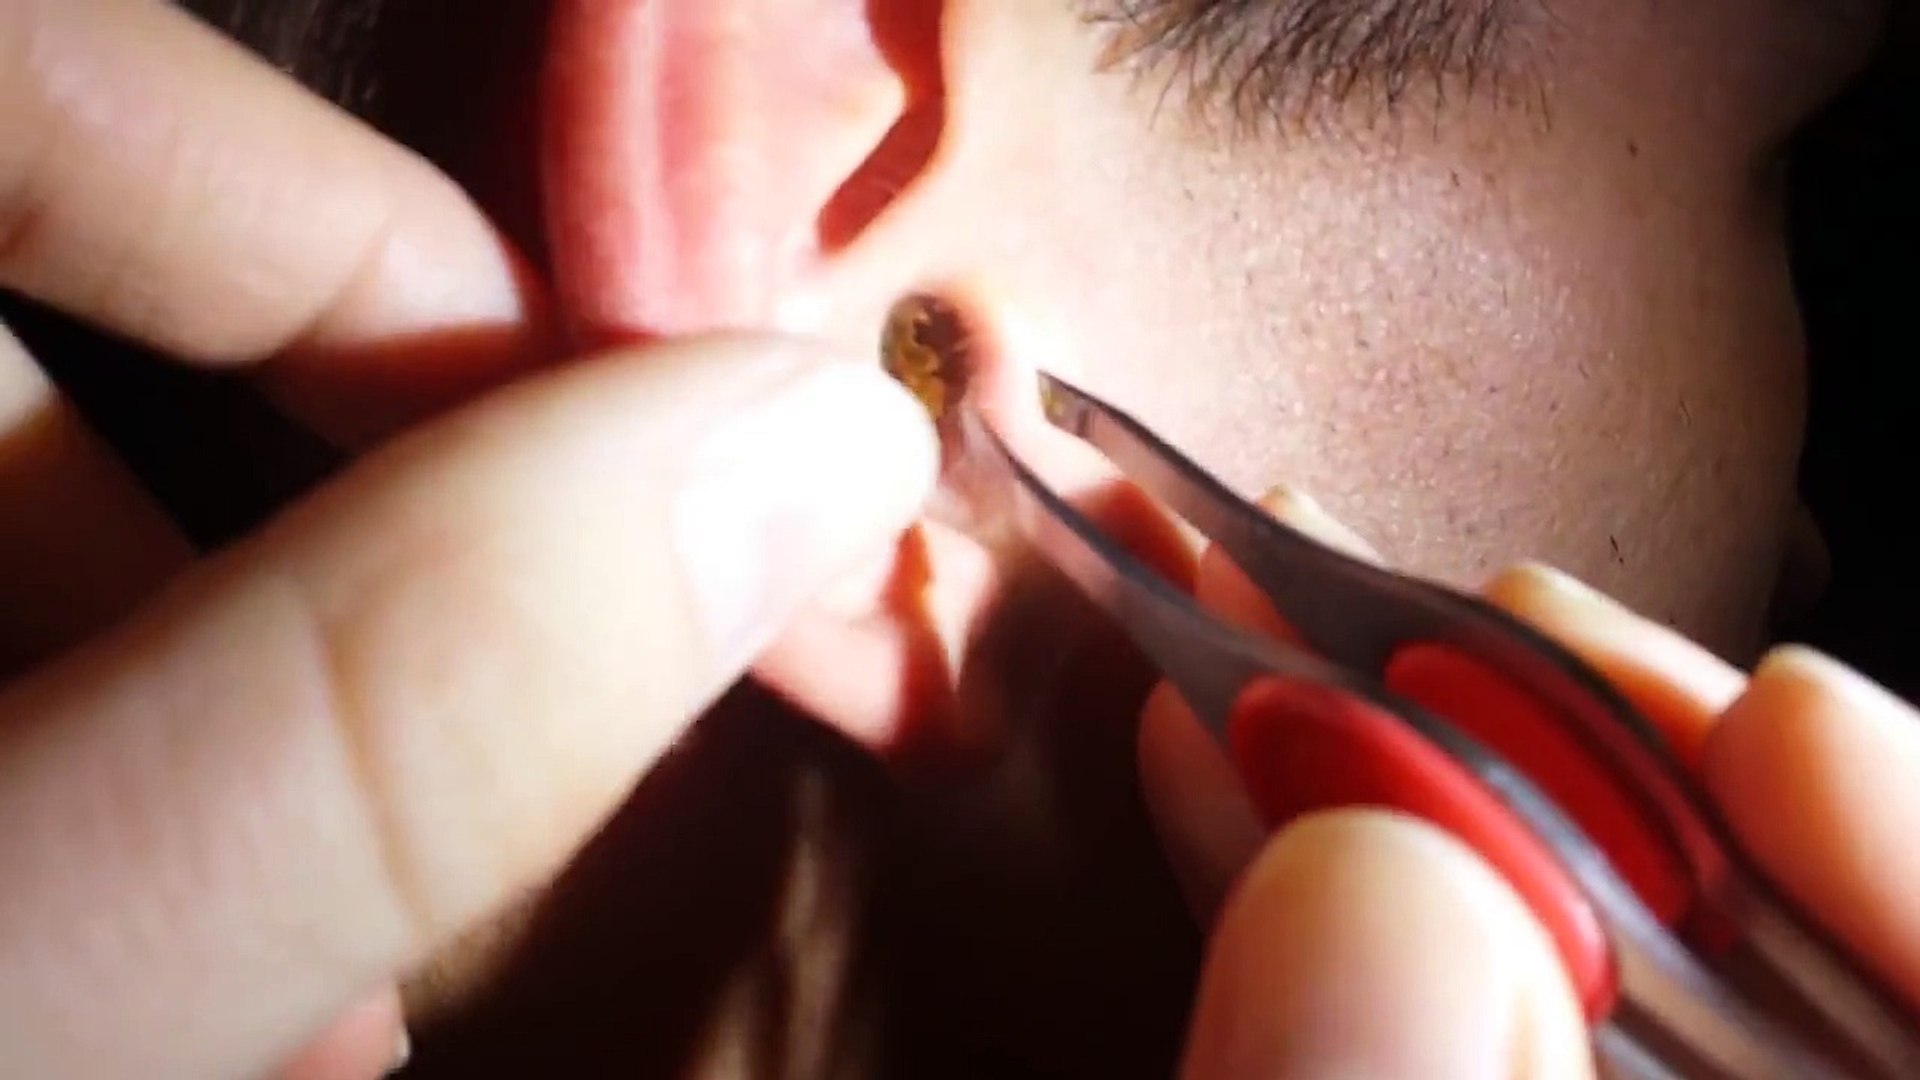 Il se fait retirer un bouchon de cérumen de l'oreille - Vidéo Dailymotion